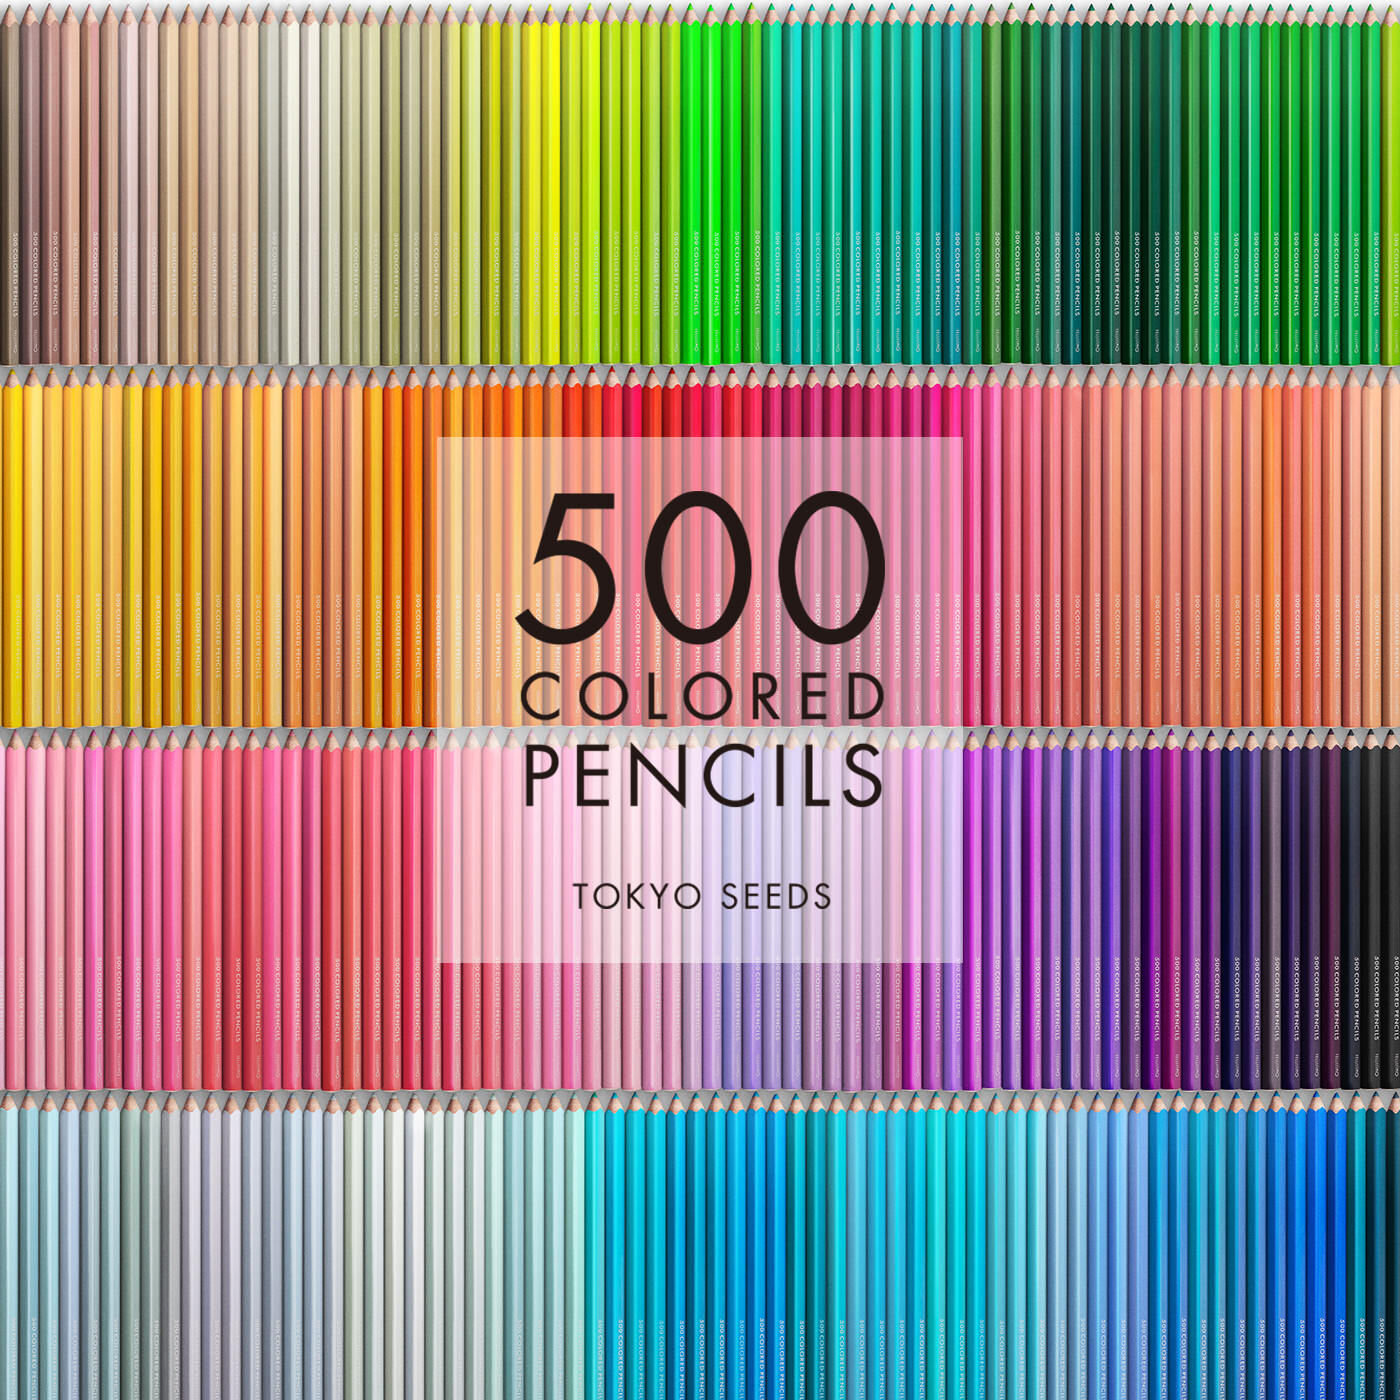 Real Stock|【52/500 MOUNTAIN RUN】500色の色えんぴつ TOKYO SEEDS|1992年、世界初の「500色」という膨大な色数の色えんぴつが誕生して以来、その販売数は発売当初から合わせると、世界55ヵ国10万セット以上。今回、メイド・イン・ジャパンにこだわり、すべてが新しく生まれ変わって登場しました。